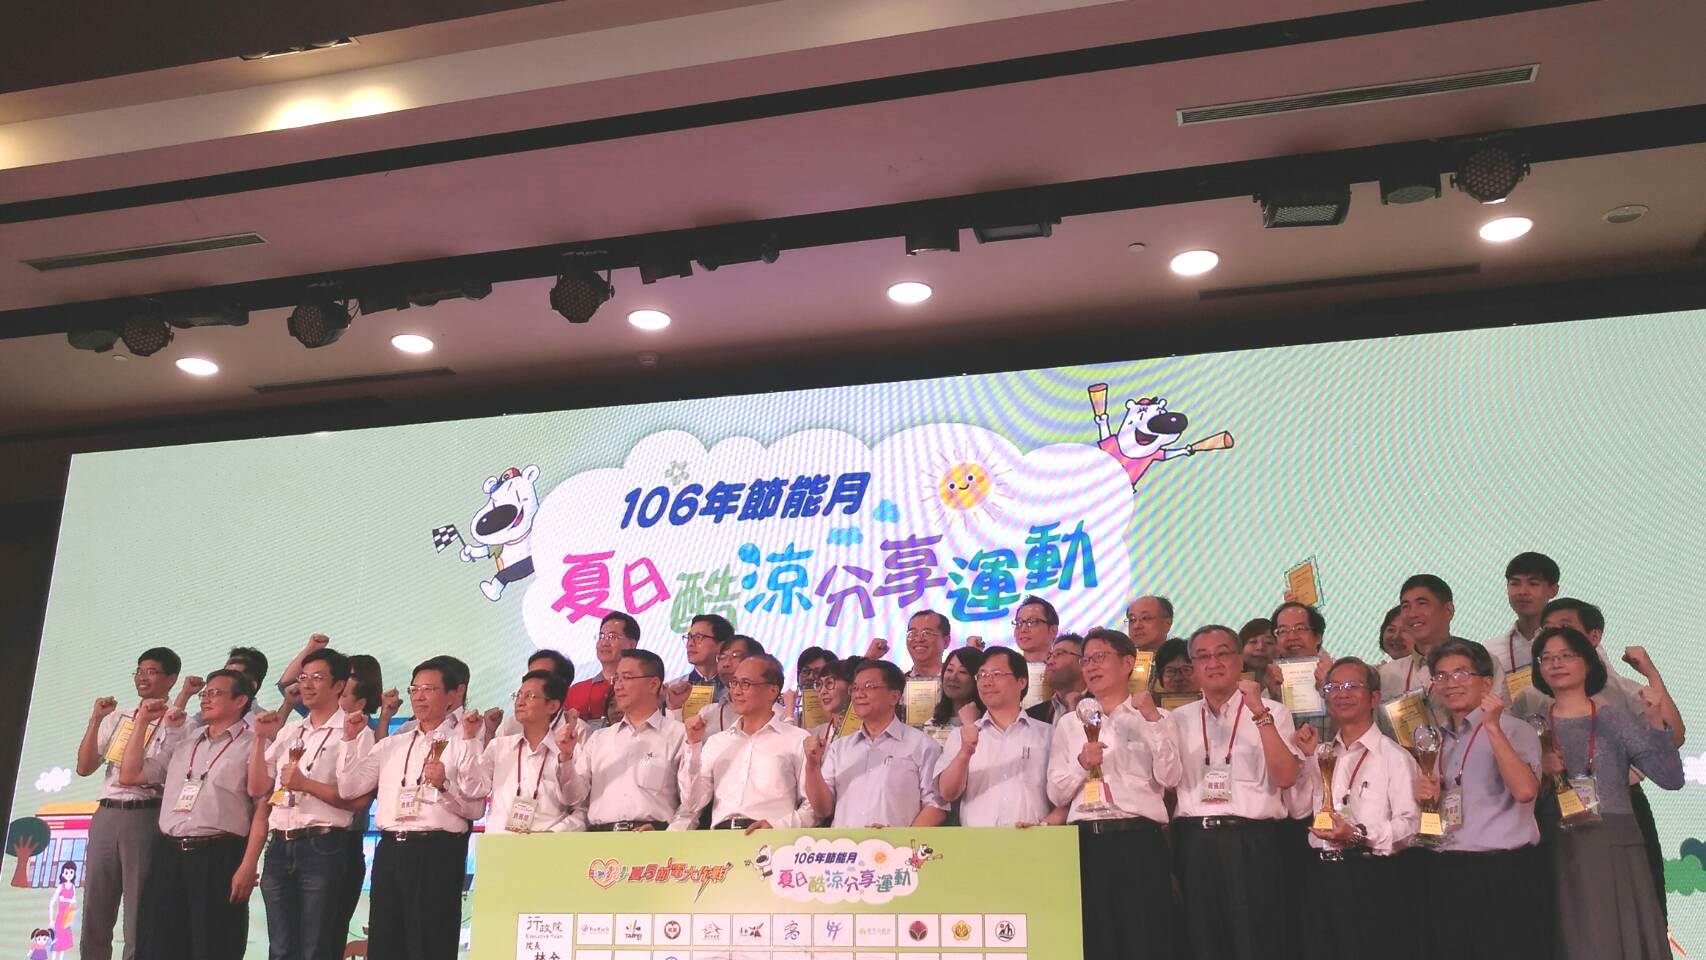 葉惠青副市長(前右五)代表新北市受領105年度夏月節電全國競賽冠軍獎項，與林全院長(中)及其他獲獎縣市代表合影